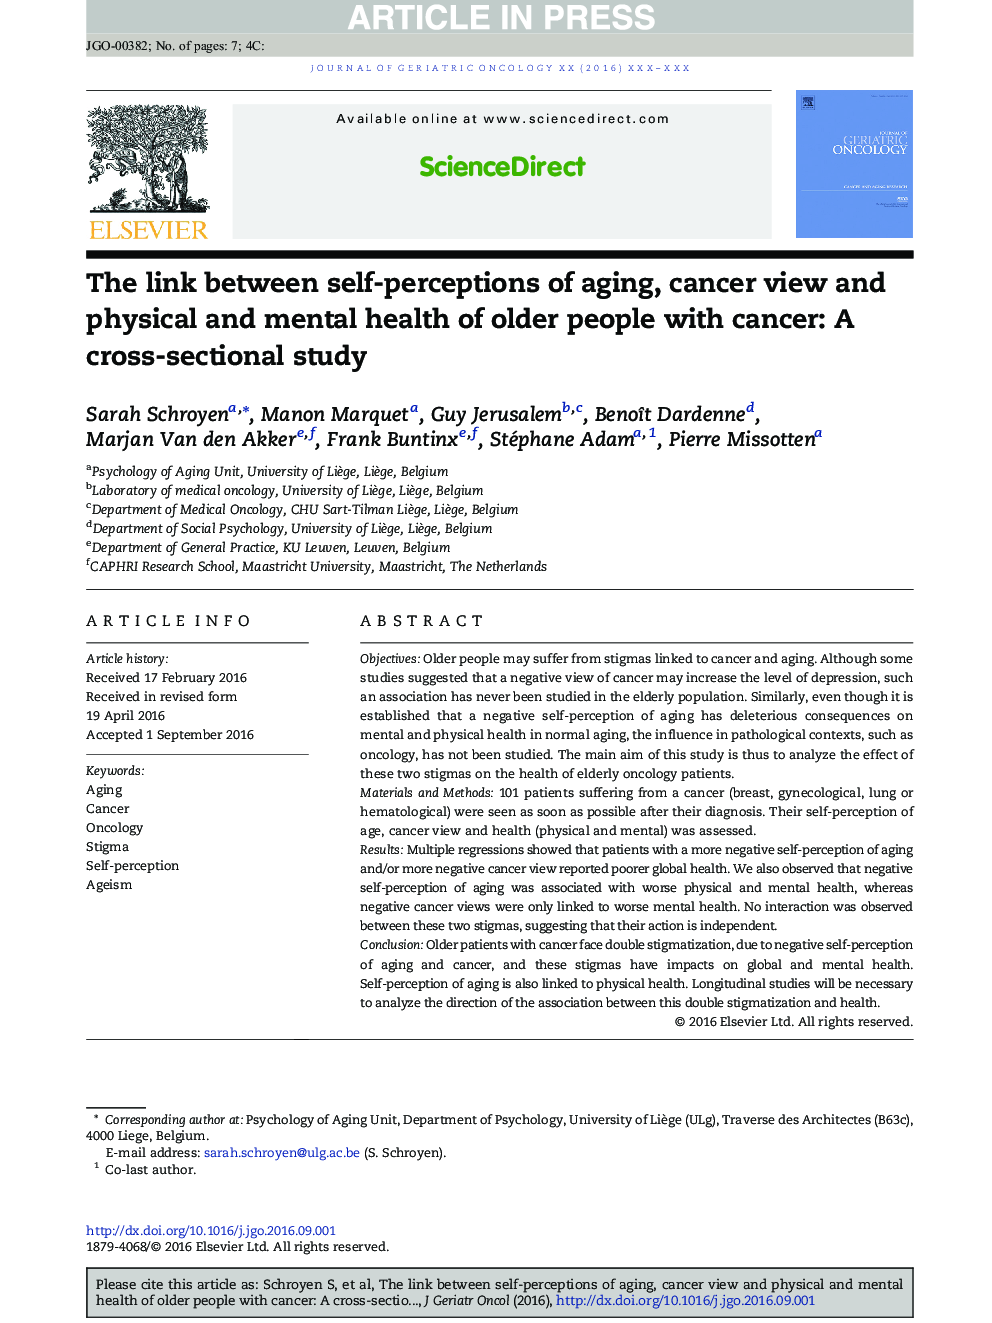 ارتباط بین خودپنداره های پیری، دیدگاه سرطان و سلامت جسمی و روان سالمندان سالخورده مبتلا به سرطان: یک مطالعه مقطعی 